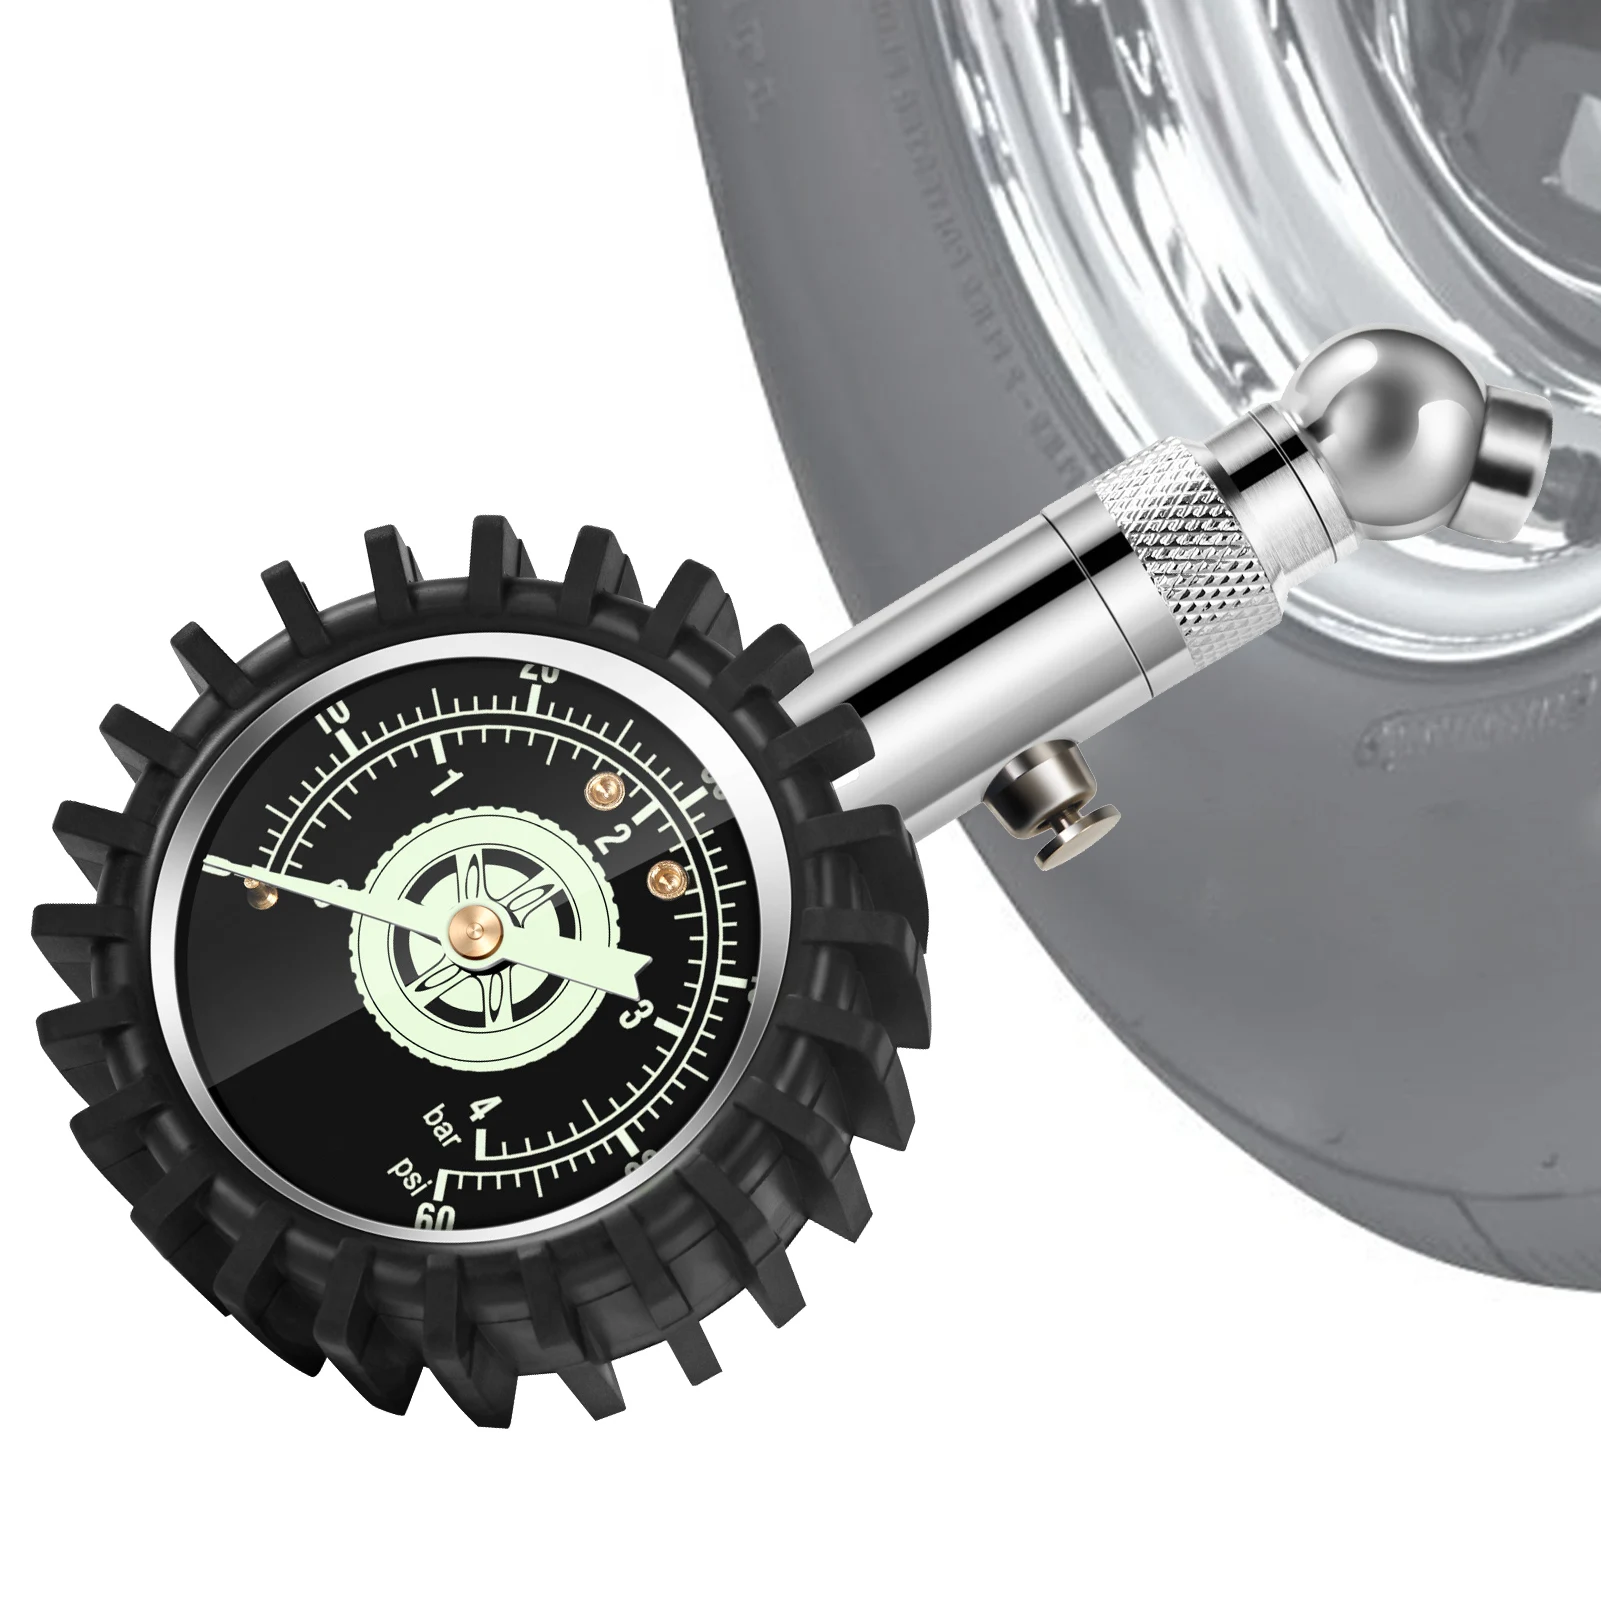 

Измеритель давления в шинах, прибор для измерения давления в шинах мотоцикла, 60 PSI, для тяжелых условий эксплуатации